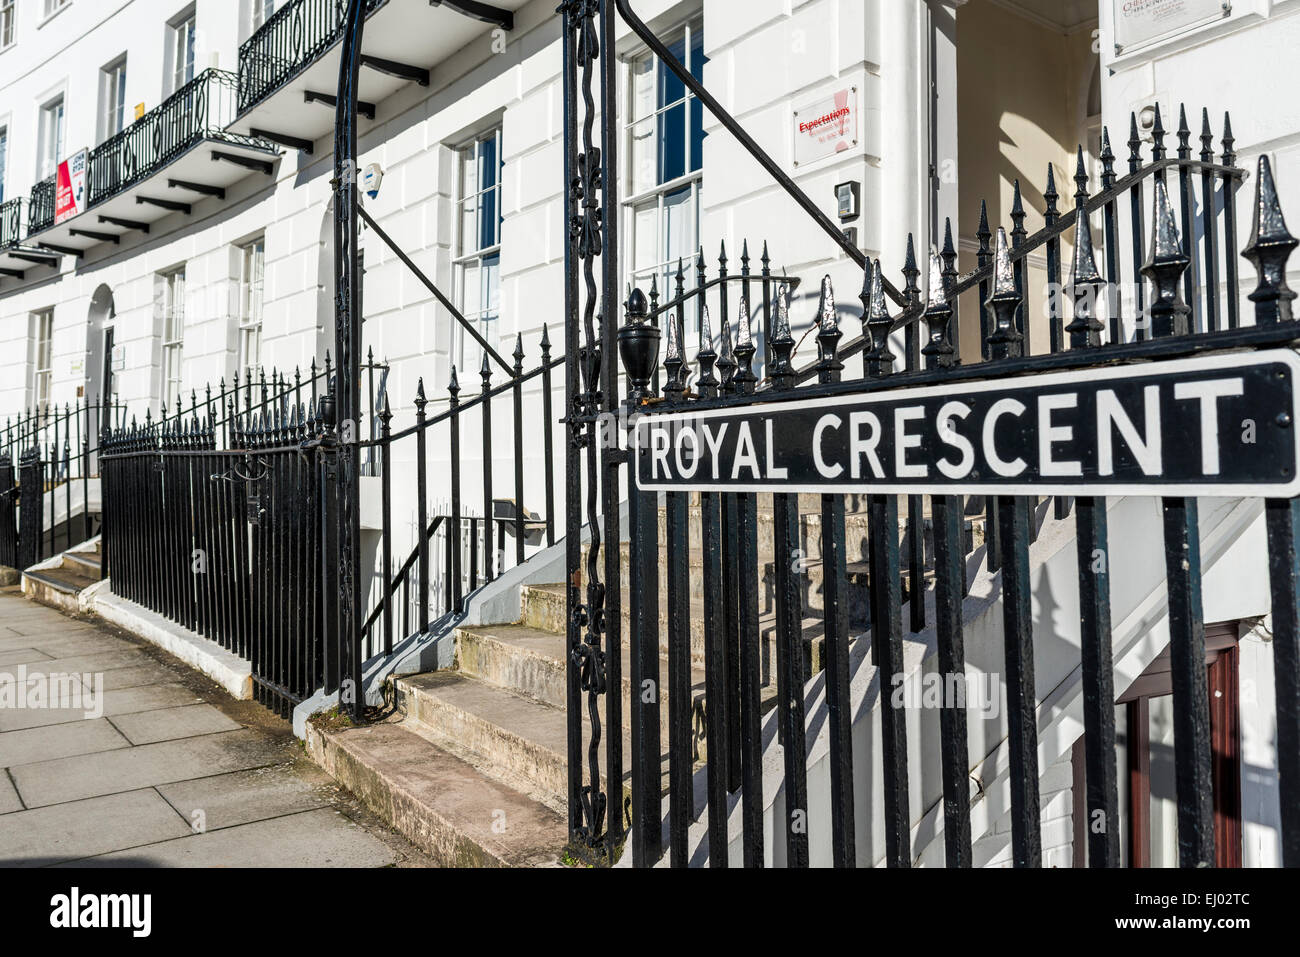 Le Royal Crescent dans le centre-ville de Cheltenham est la ville la plus ancienne de l'exemple de l'architecture de style Régence de Charles Harecourt Masters Banque D'Images